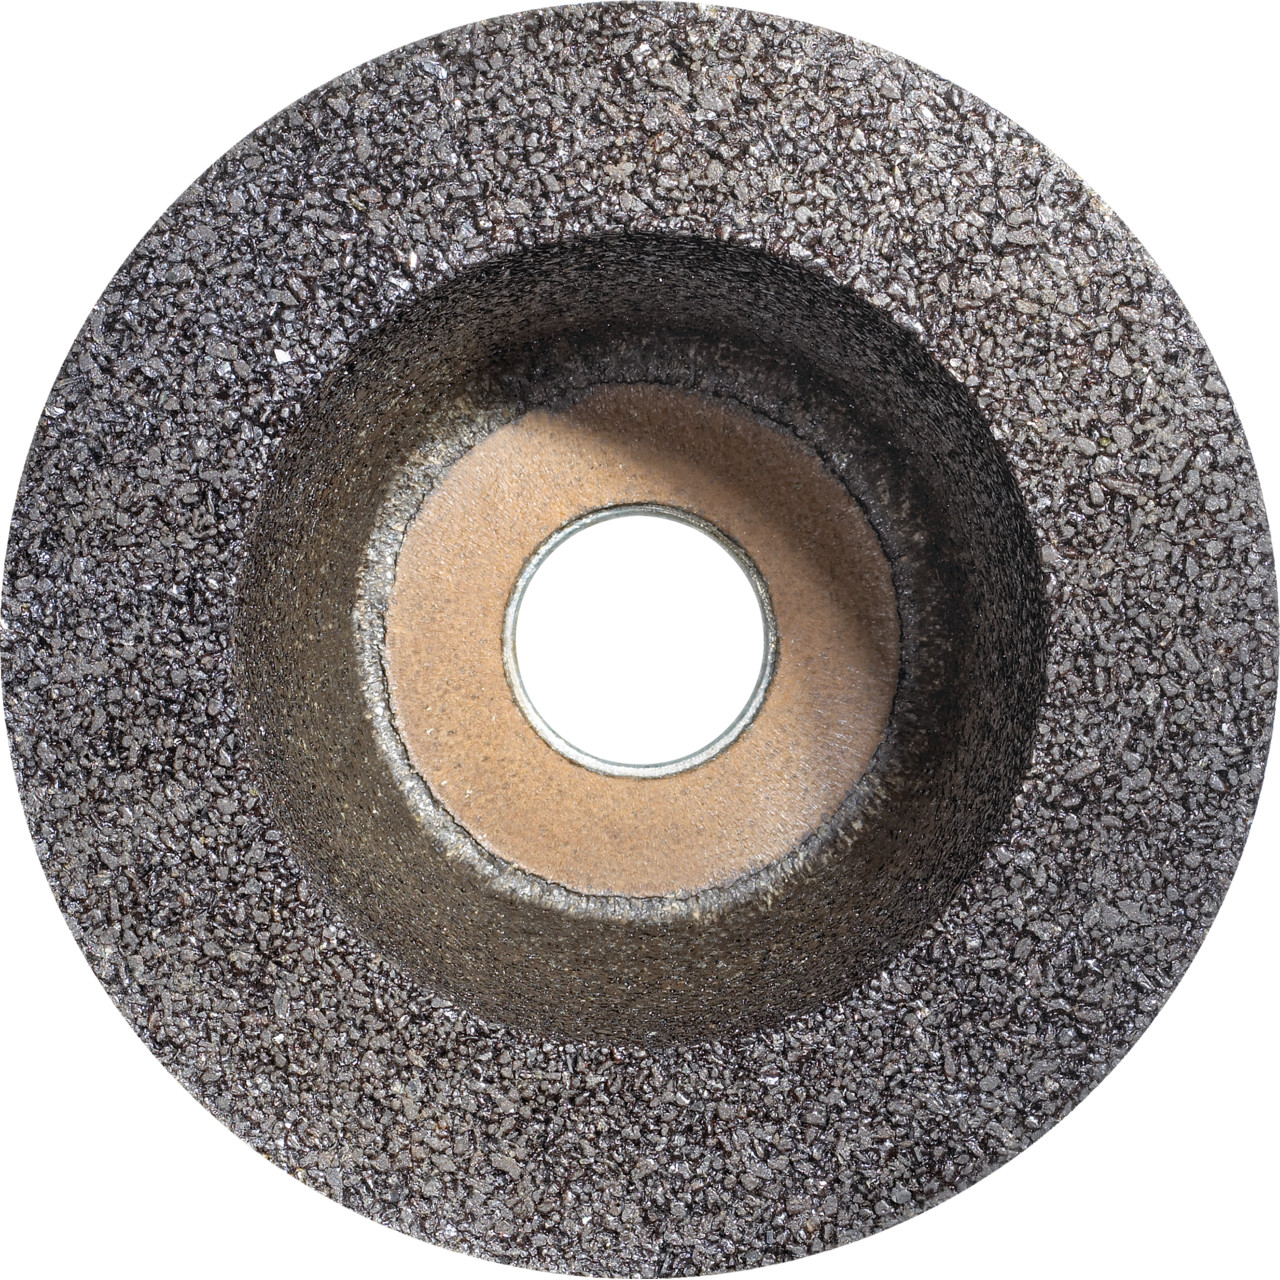 TYROLIT Pot en résine synthétique DxTxGE 100x45xM14 Pour la pierre, forme : 6ZB (pot de meulage), art. 56895